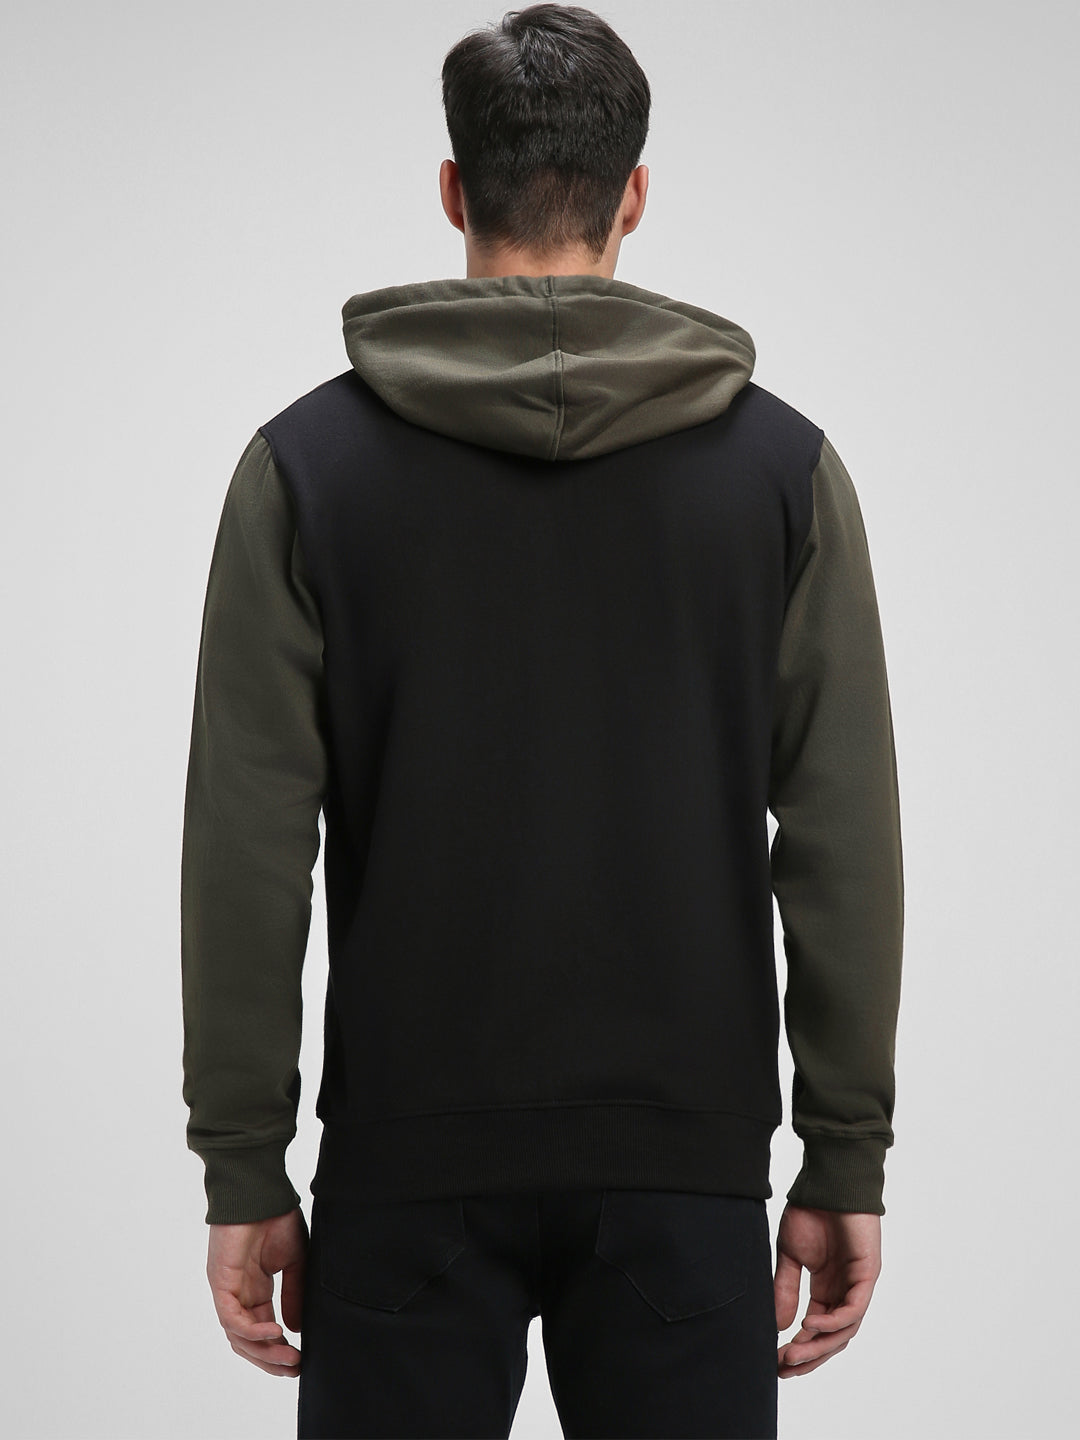 Dennis Lingo Men's Black  Full Sleeves Zipper hoodie Sweatshirt